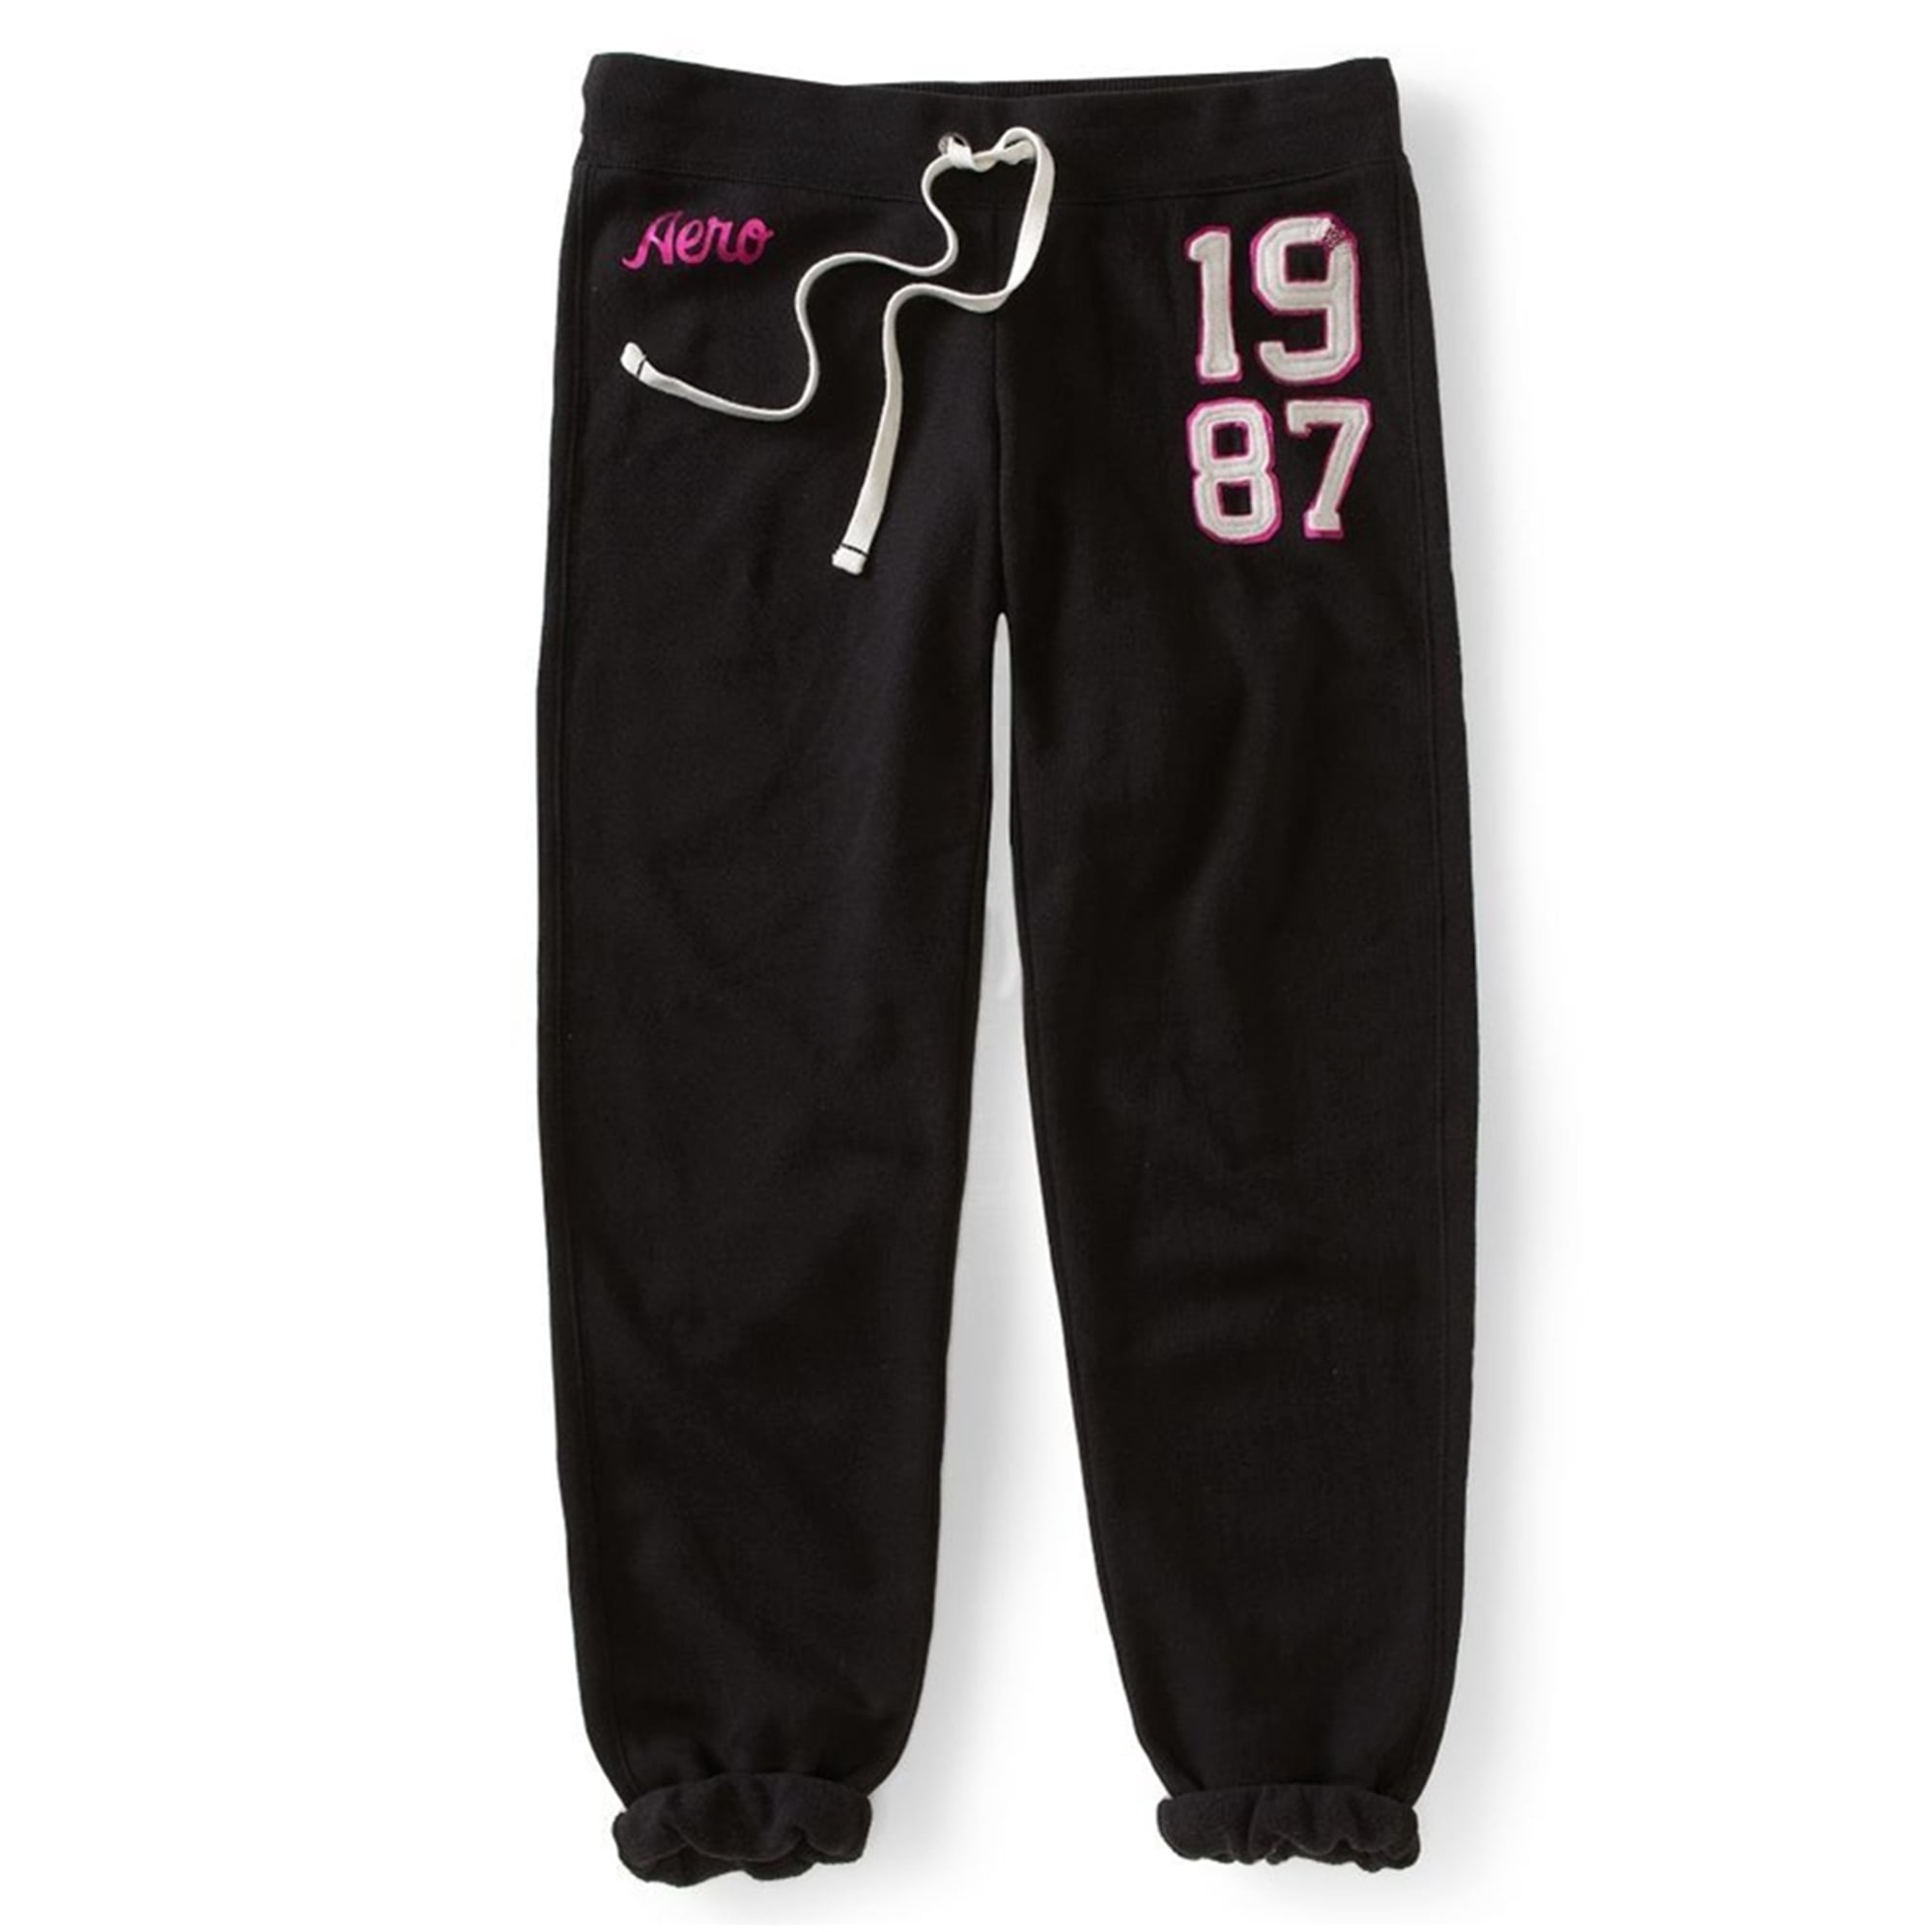 Cinch 1987 - Pantalones para mujer, color negro, extragrande Aeropostale Pantalones deportivos | Walmart en